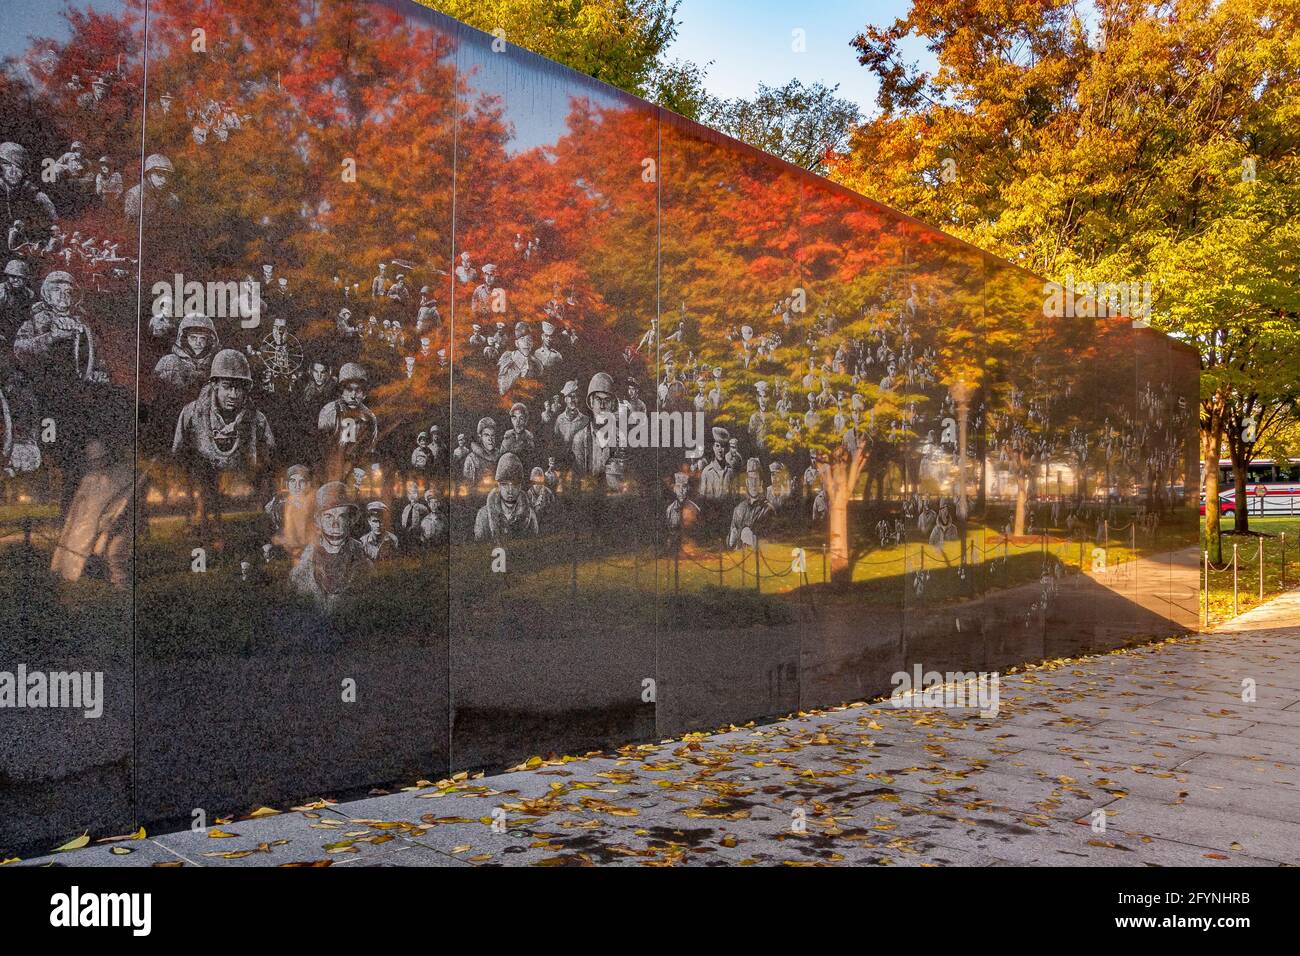 Fotografische Bilder von Soldaten und herbstlichen Bäumen spiegeln sich in der hochpolierten schwarzen Granitwand des Koreanischen Kriegsdenkmals in Washington DC wider Stockfoto